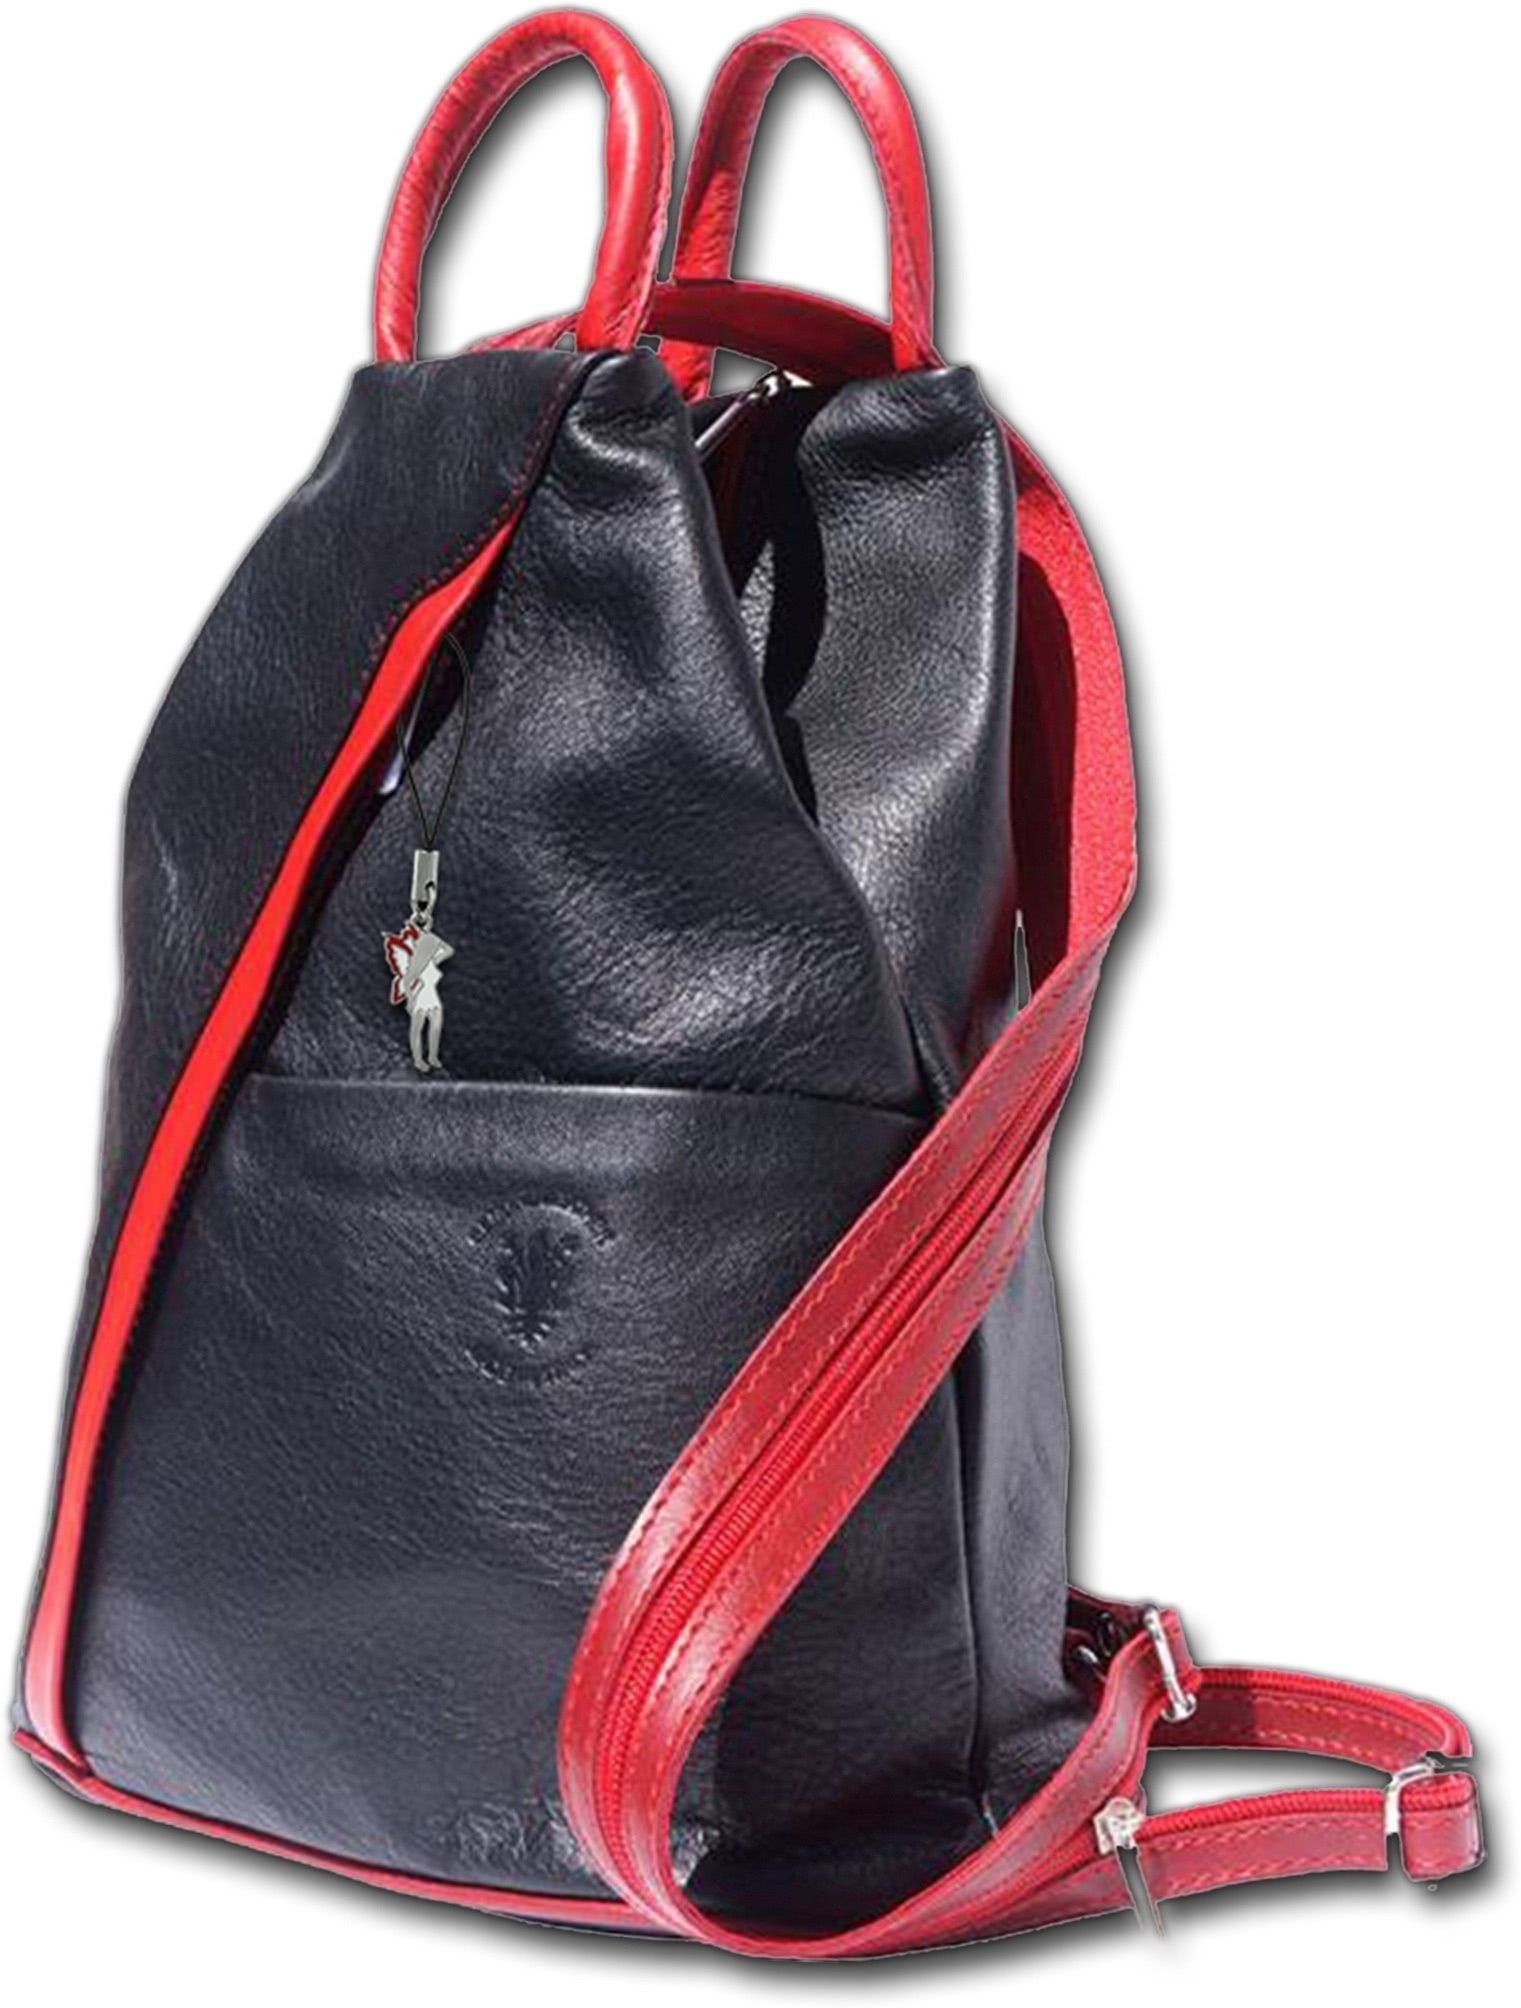 FLORENCE Cityrucksack »D2OTF604D Florence echtes Leder Damentasche«  (Cityrucksack), Damen Rucksack, Tasche aus Echtleder in schwarz, rot,  Made-In Italy online kaufen | OTTO